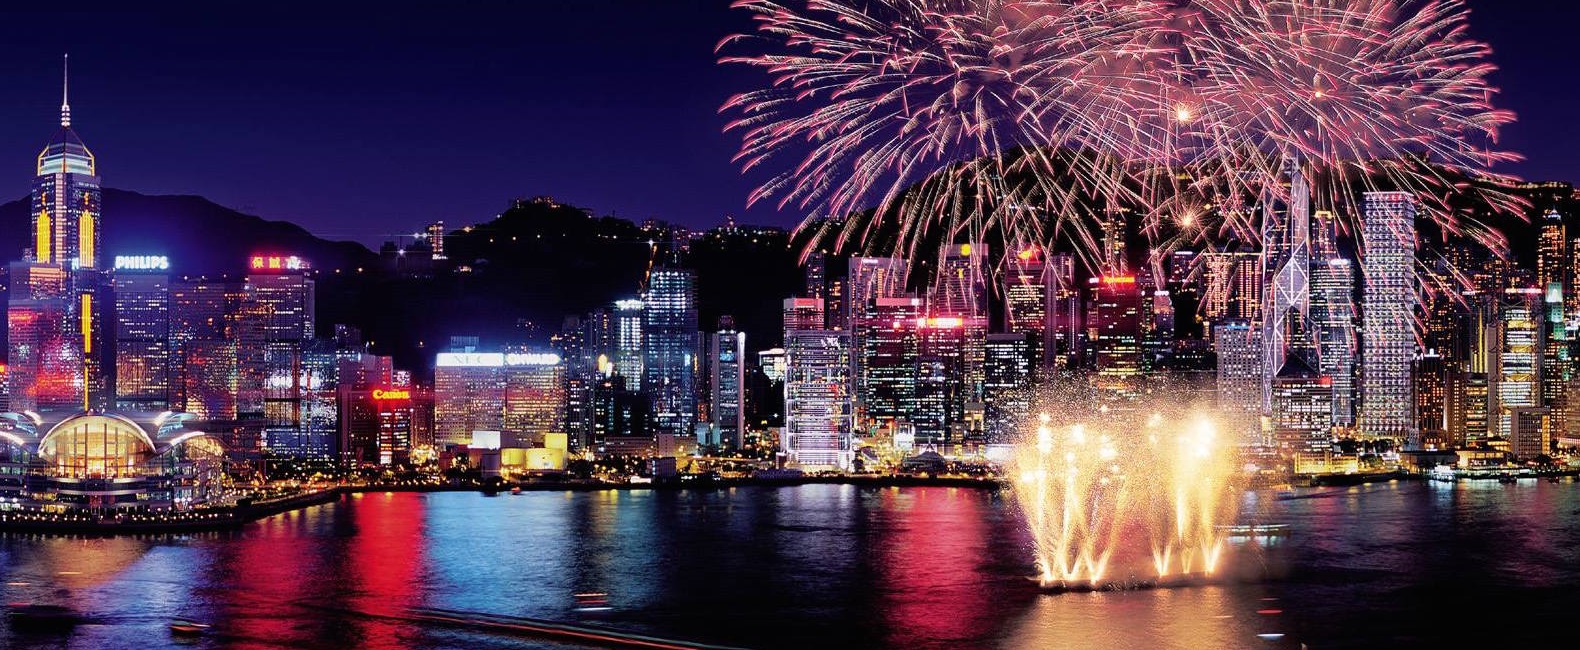 New Years Eve Hong Kong 2020